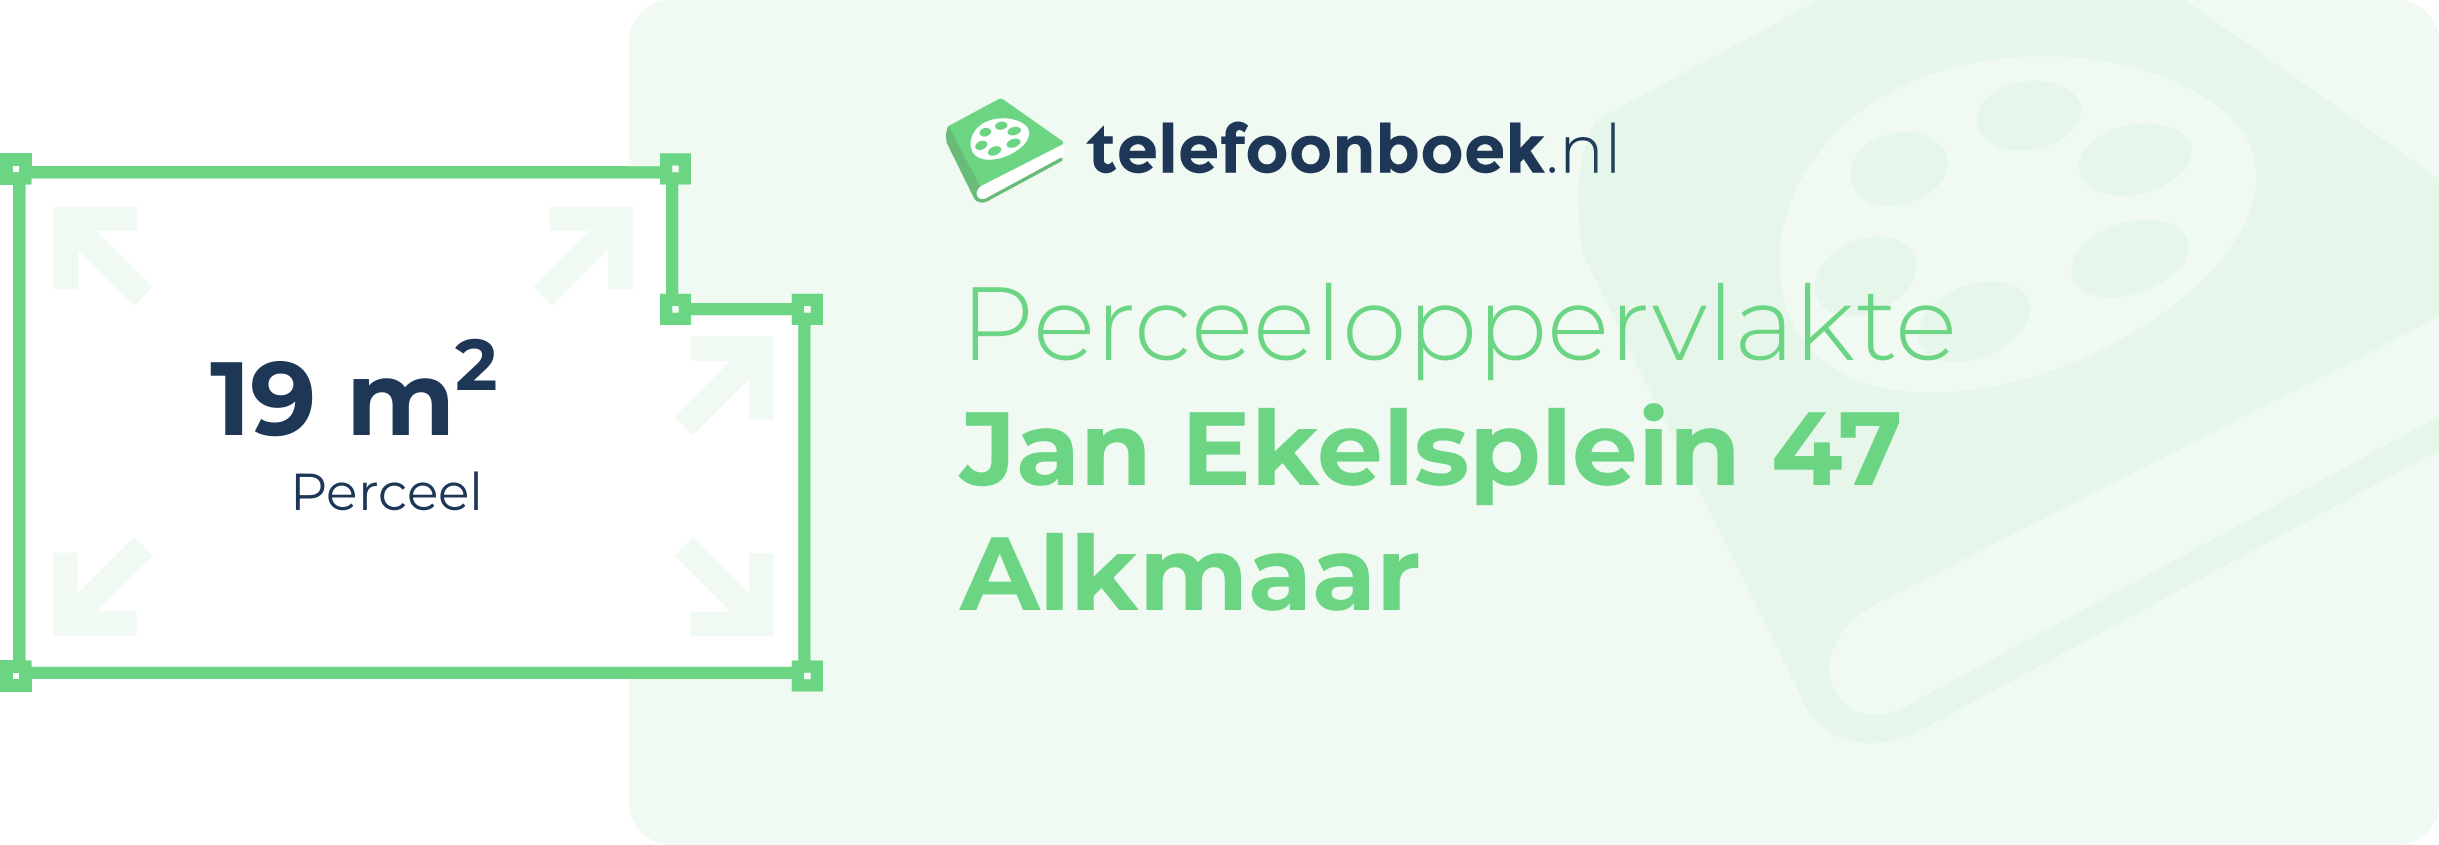 Perceeloppervlakte Jan Ekelsplein 47 Alkmaar